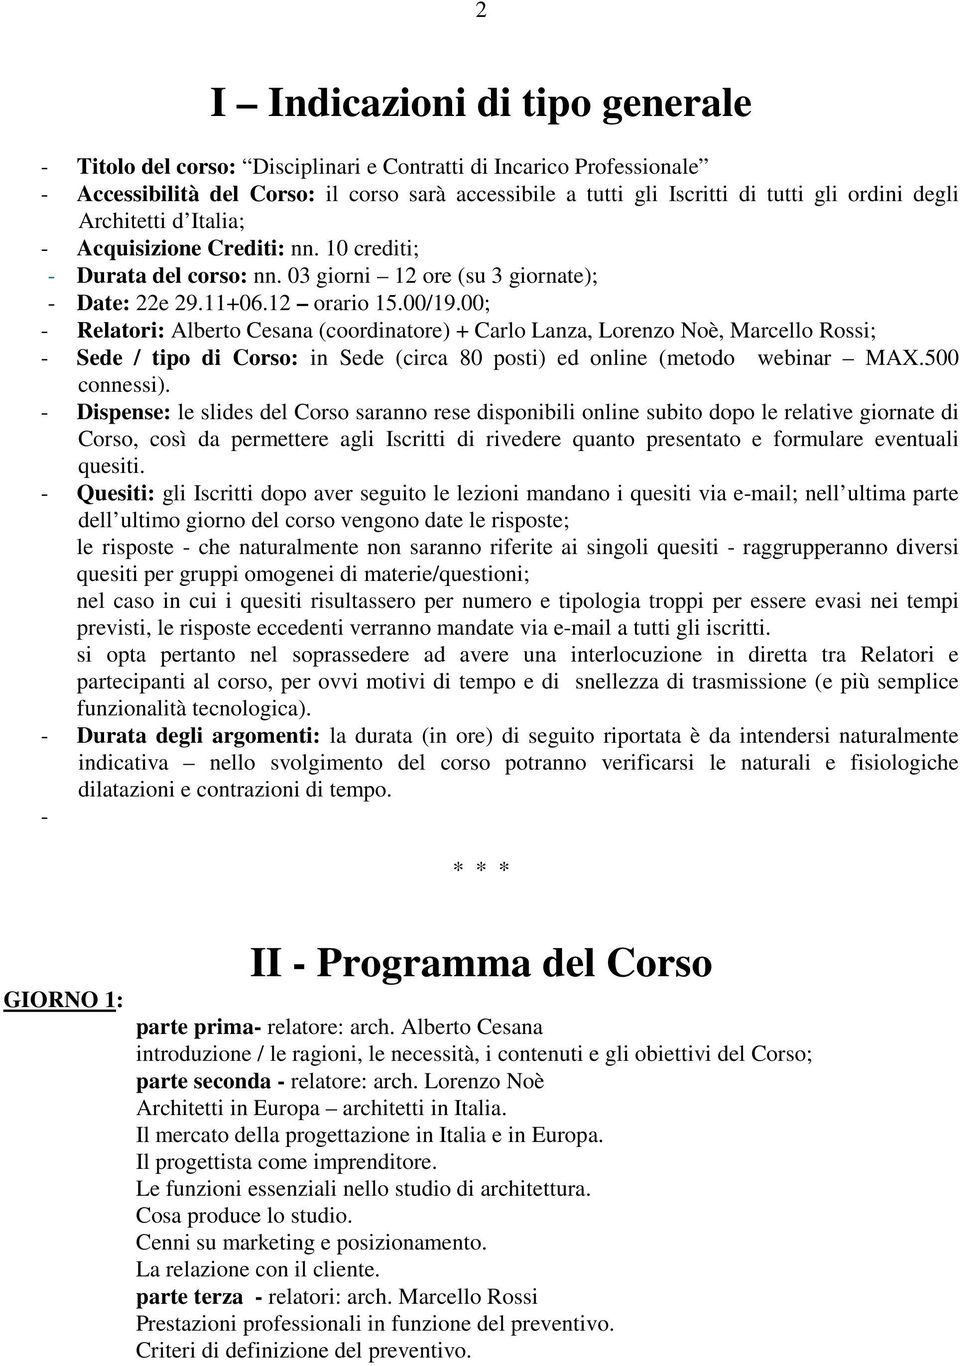 00; - Relatori: Alberto Cesana (coordinatore) + Carlo Lanza, Lorenzo Noè, Marcello Rossi; - Sede / tipo di Corso: in Sede (circa 80 posti) ed online (metodo webinar MAX.500 connessi).